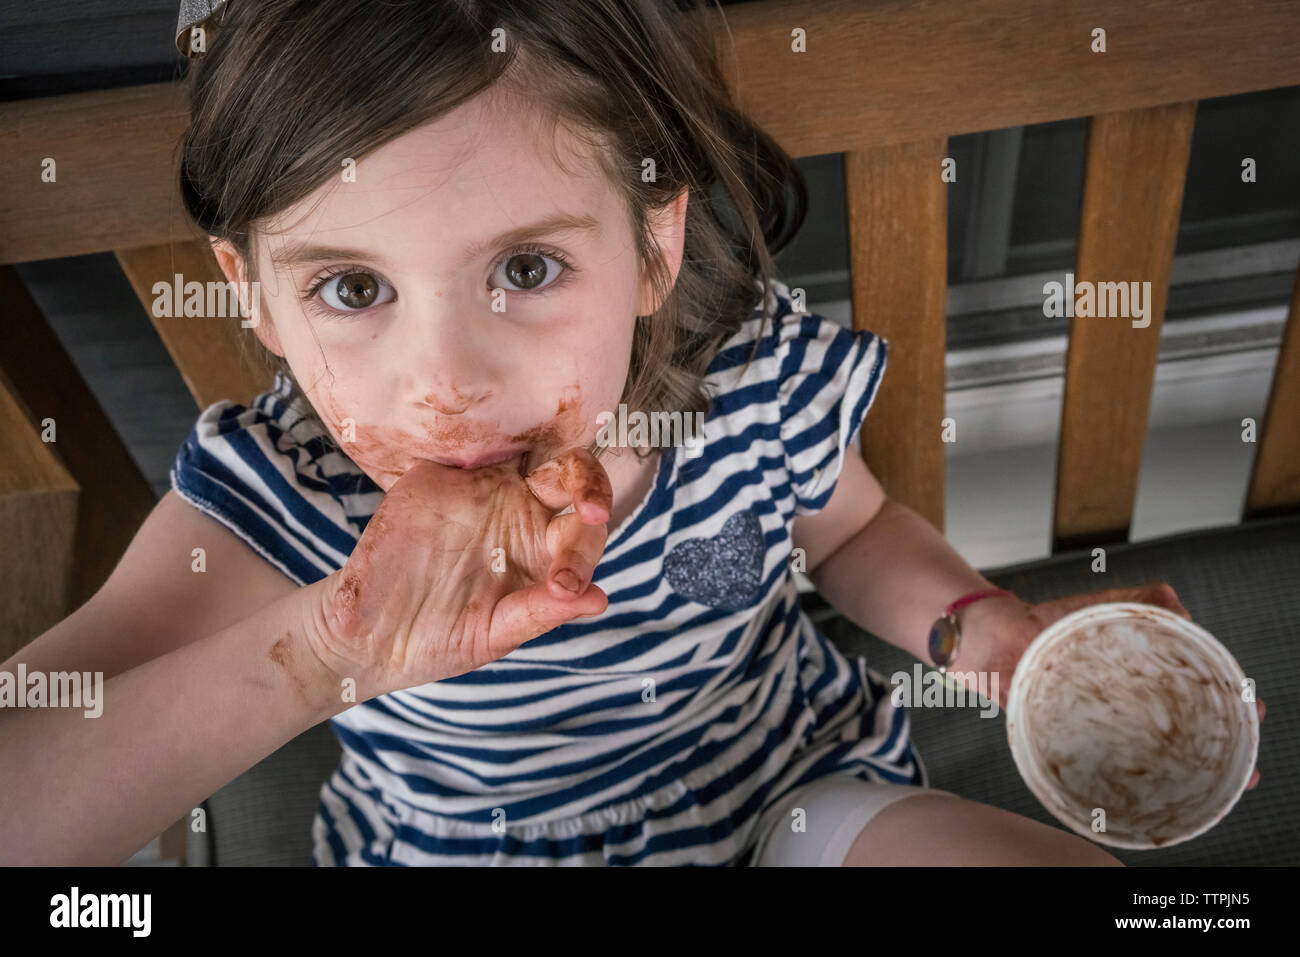 Hohen winkel Portrait von Mädchen mit unordentlichen Mund Schokolade essen beim Sitzen auf Stuhl zu Hause Stockfoto